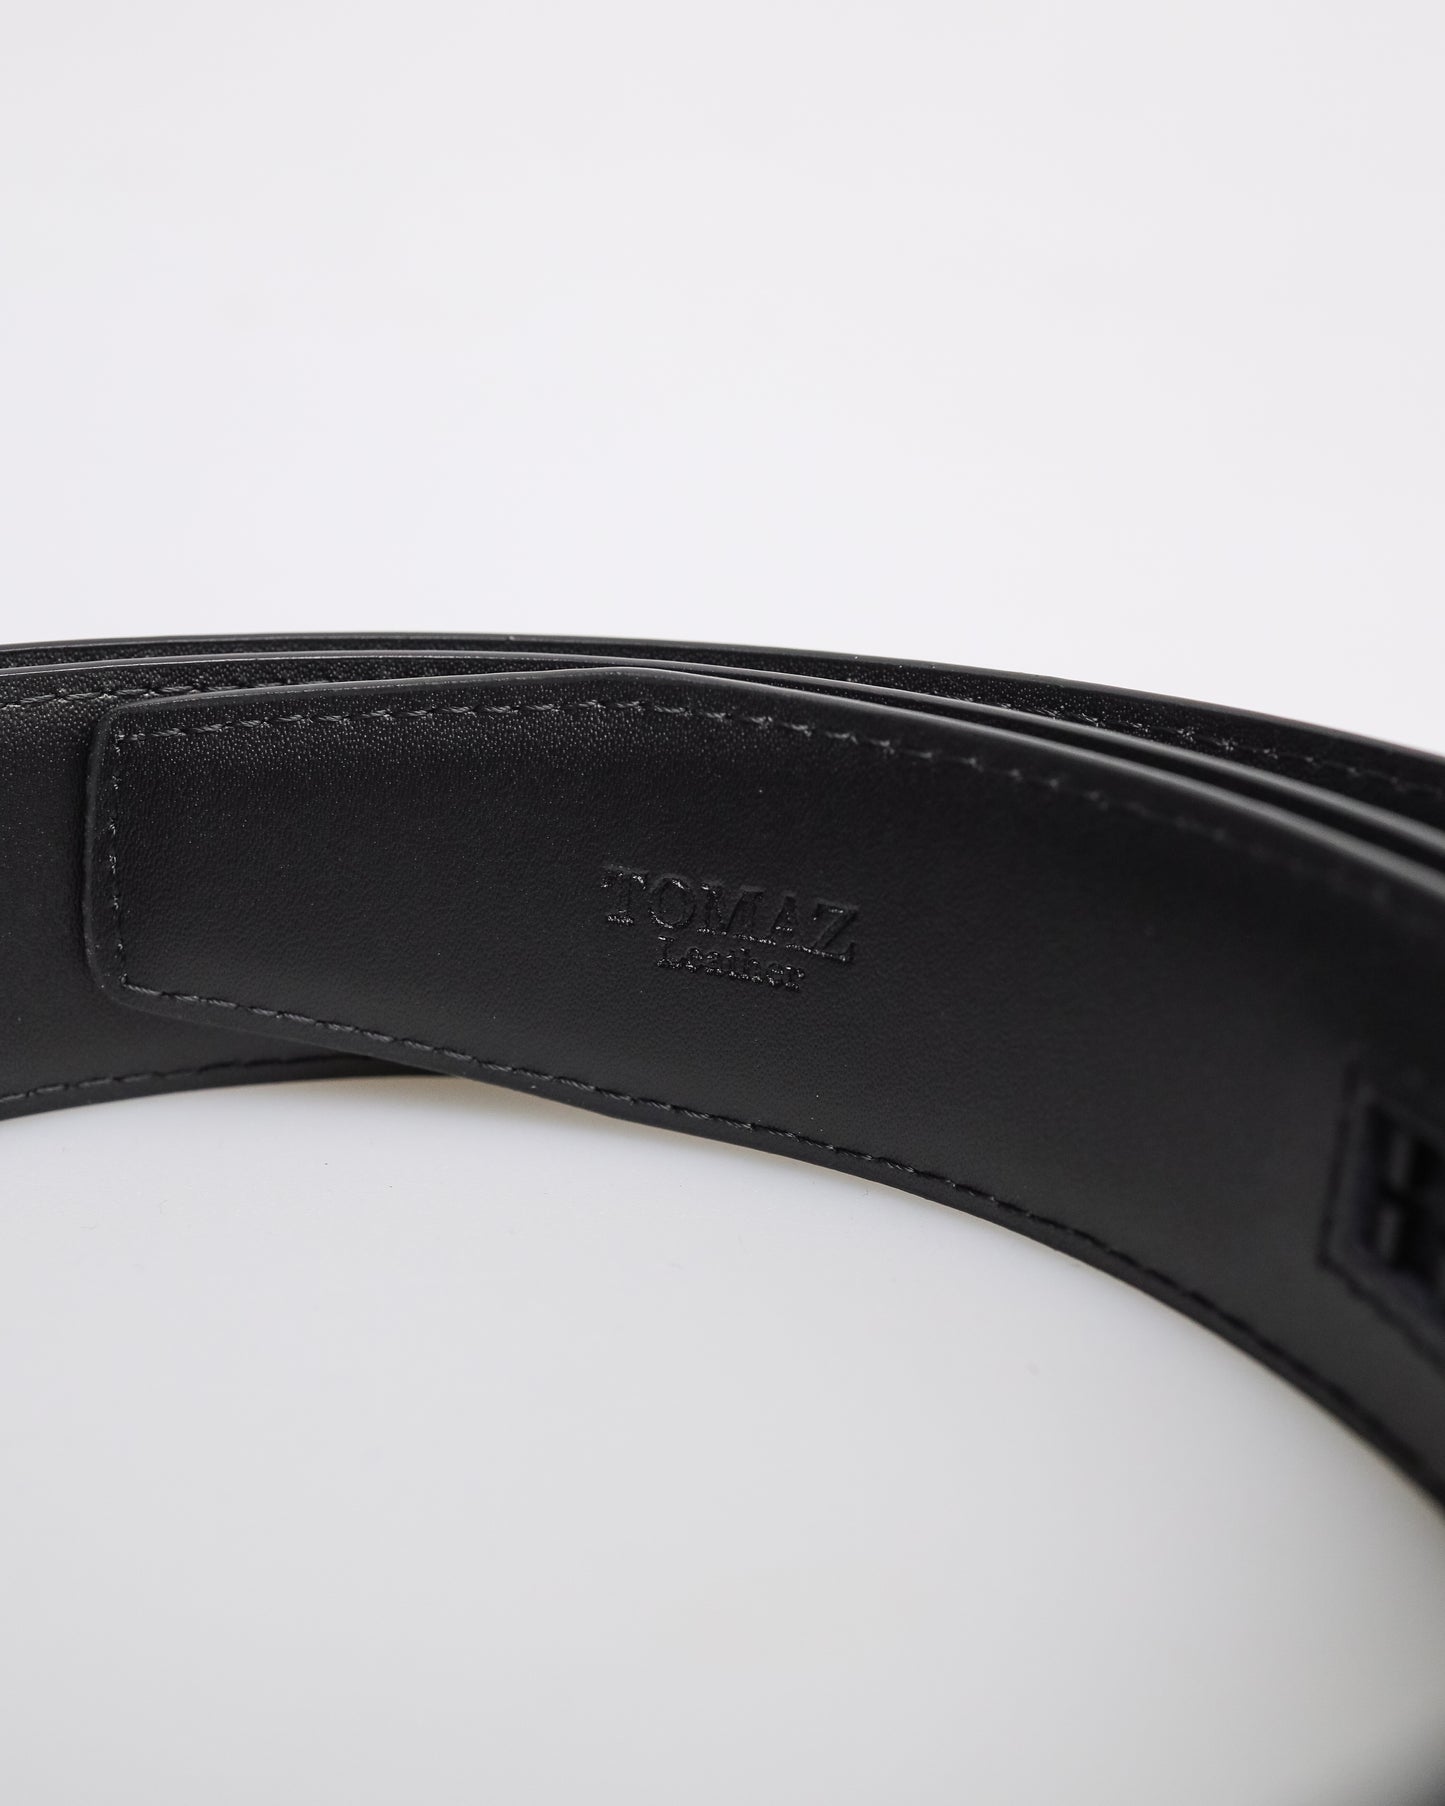 Tomaz AB118 Men's Automatic Split Leather Belt (Black)